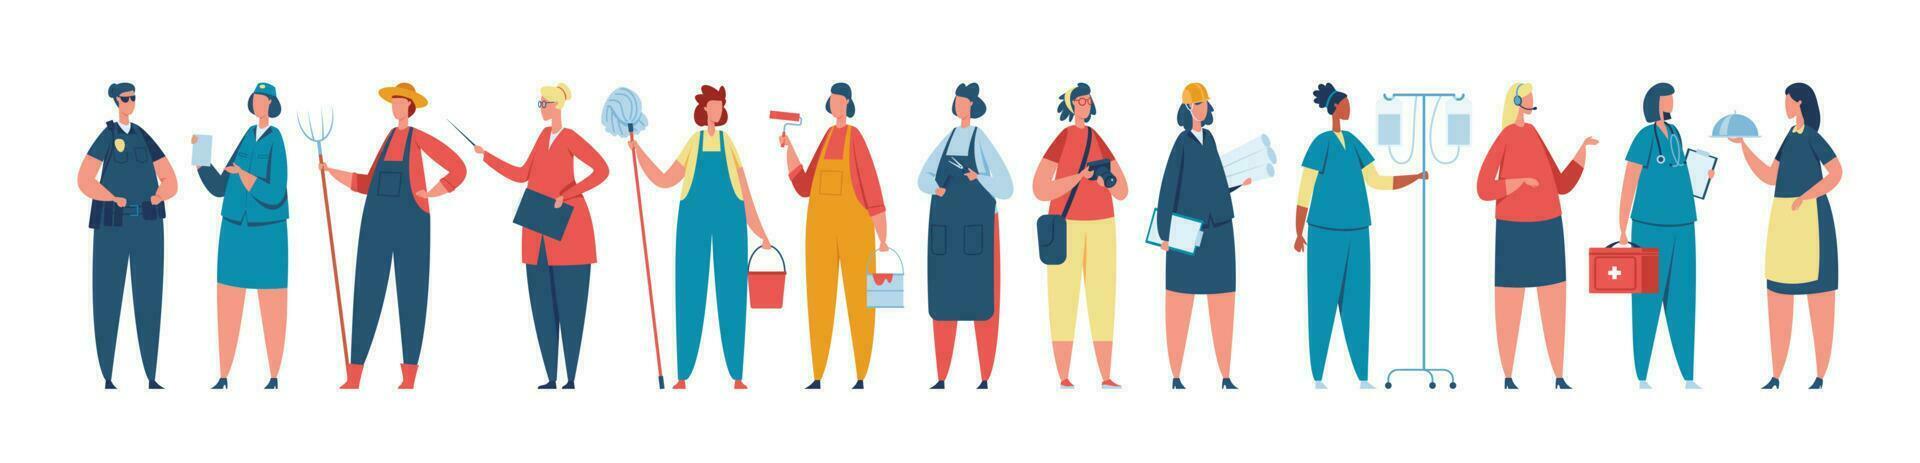 professionale femmina lavoratore nel uniforme, donne di diverso occupazioni. diverso gruppo di donne lavoratori in piedi insieme vettore illustrazione